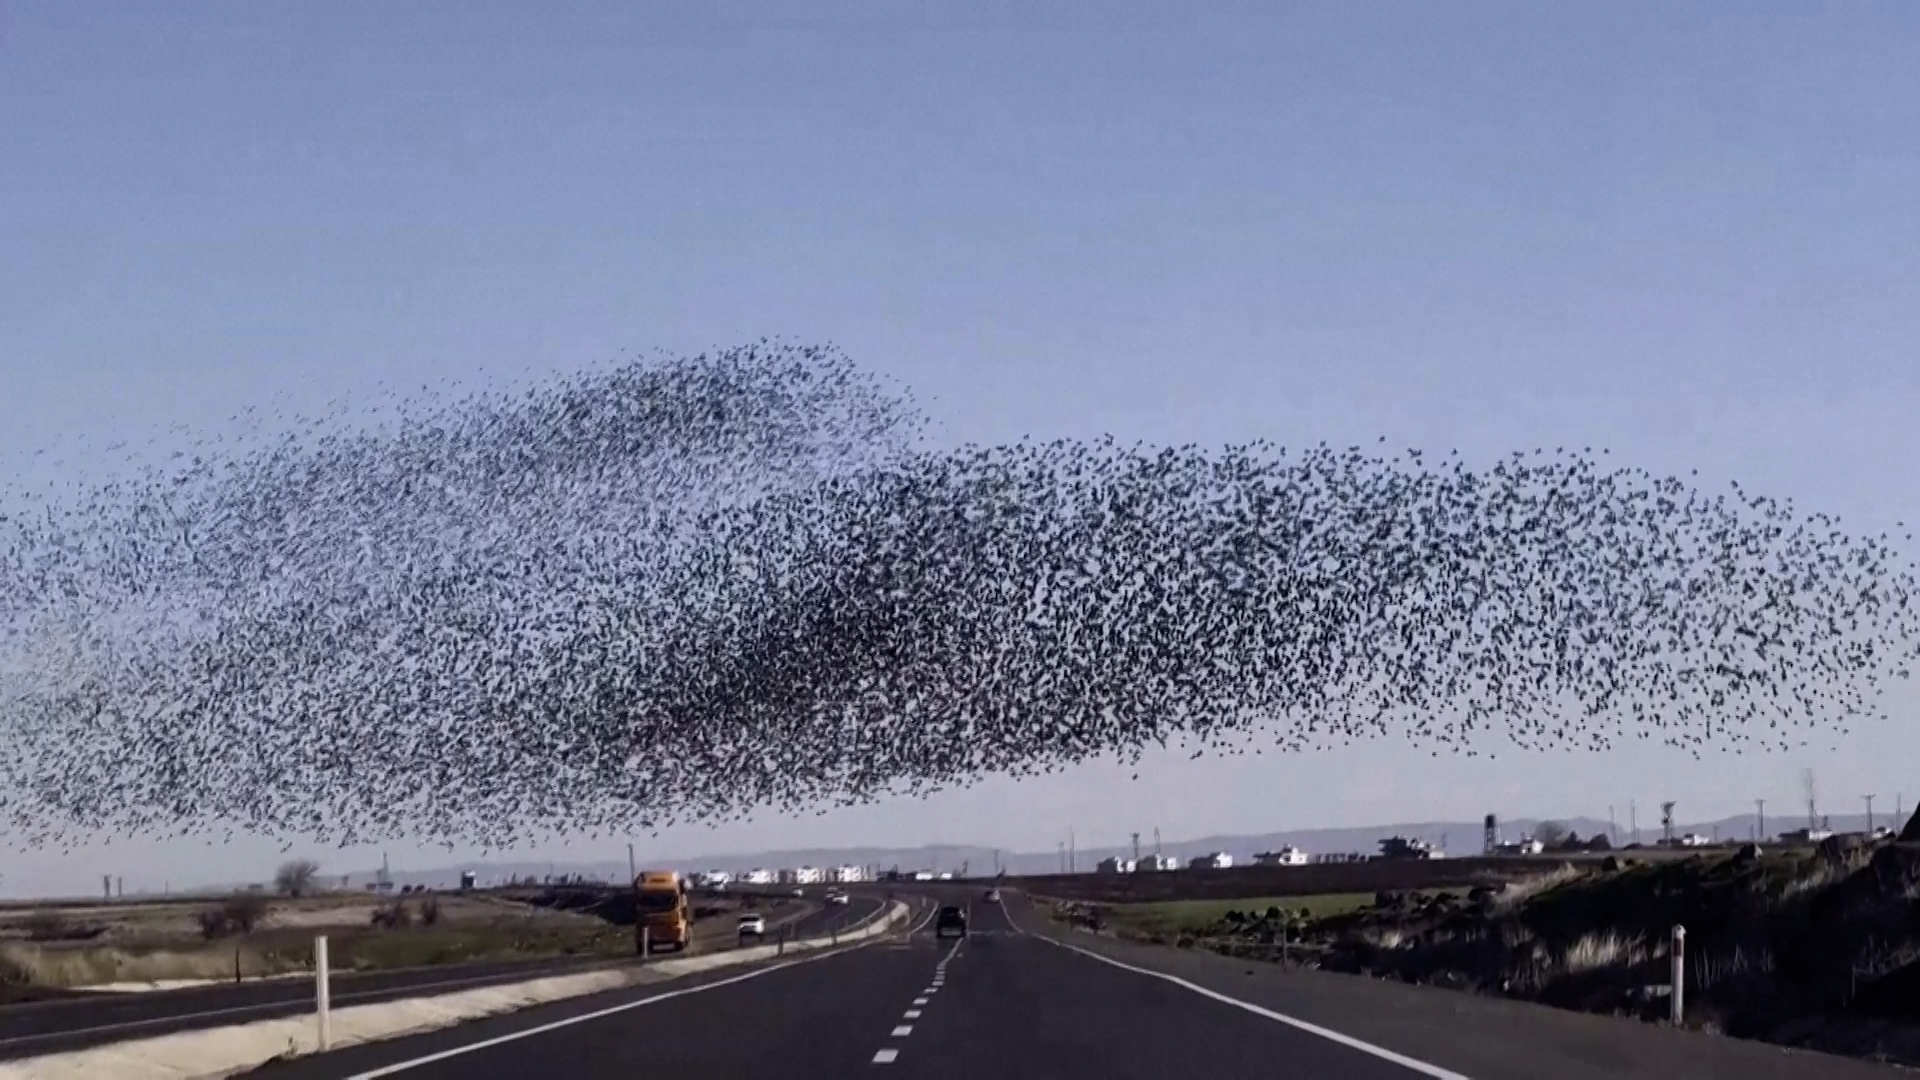 Βίντεο: Σμήνος πουλιών δημιουργεί εντυπωσιακούς σχηματισμούς στον τουρκικό ουρανό